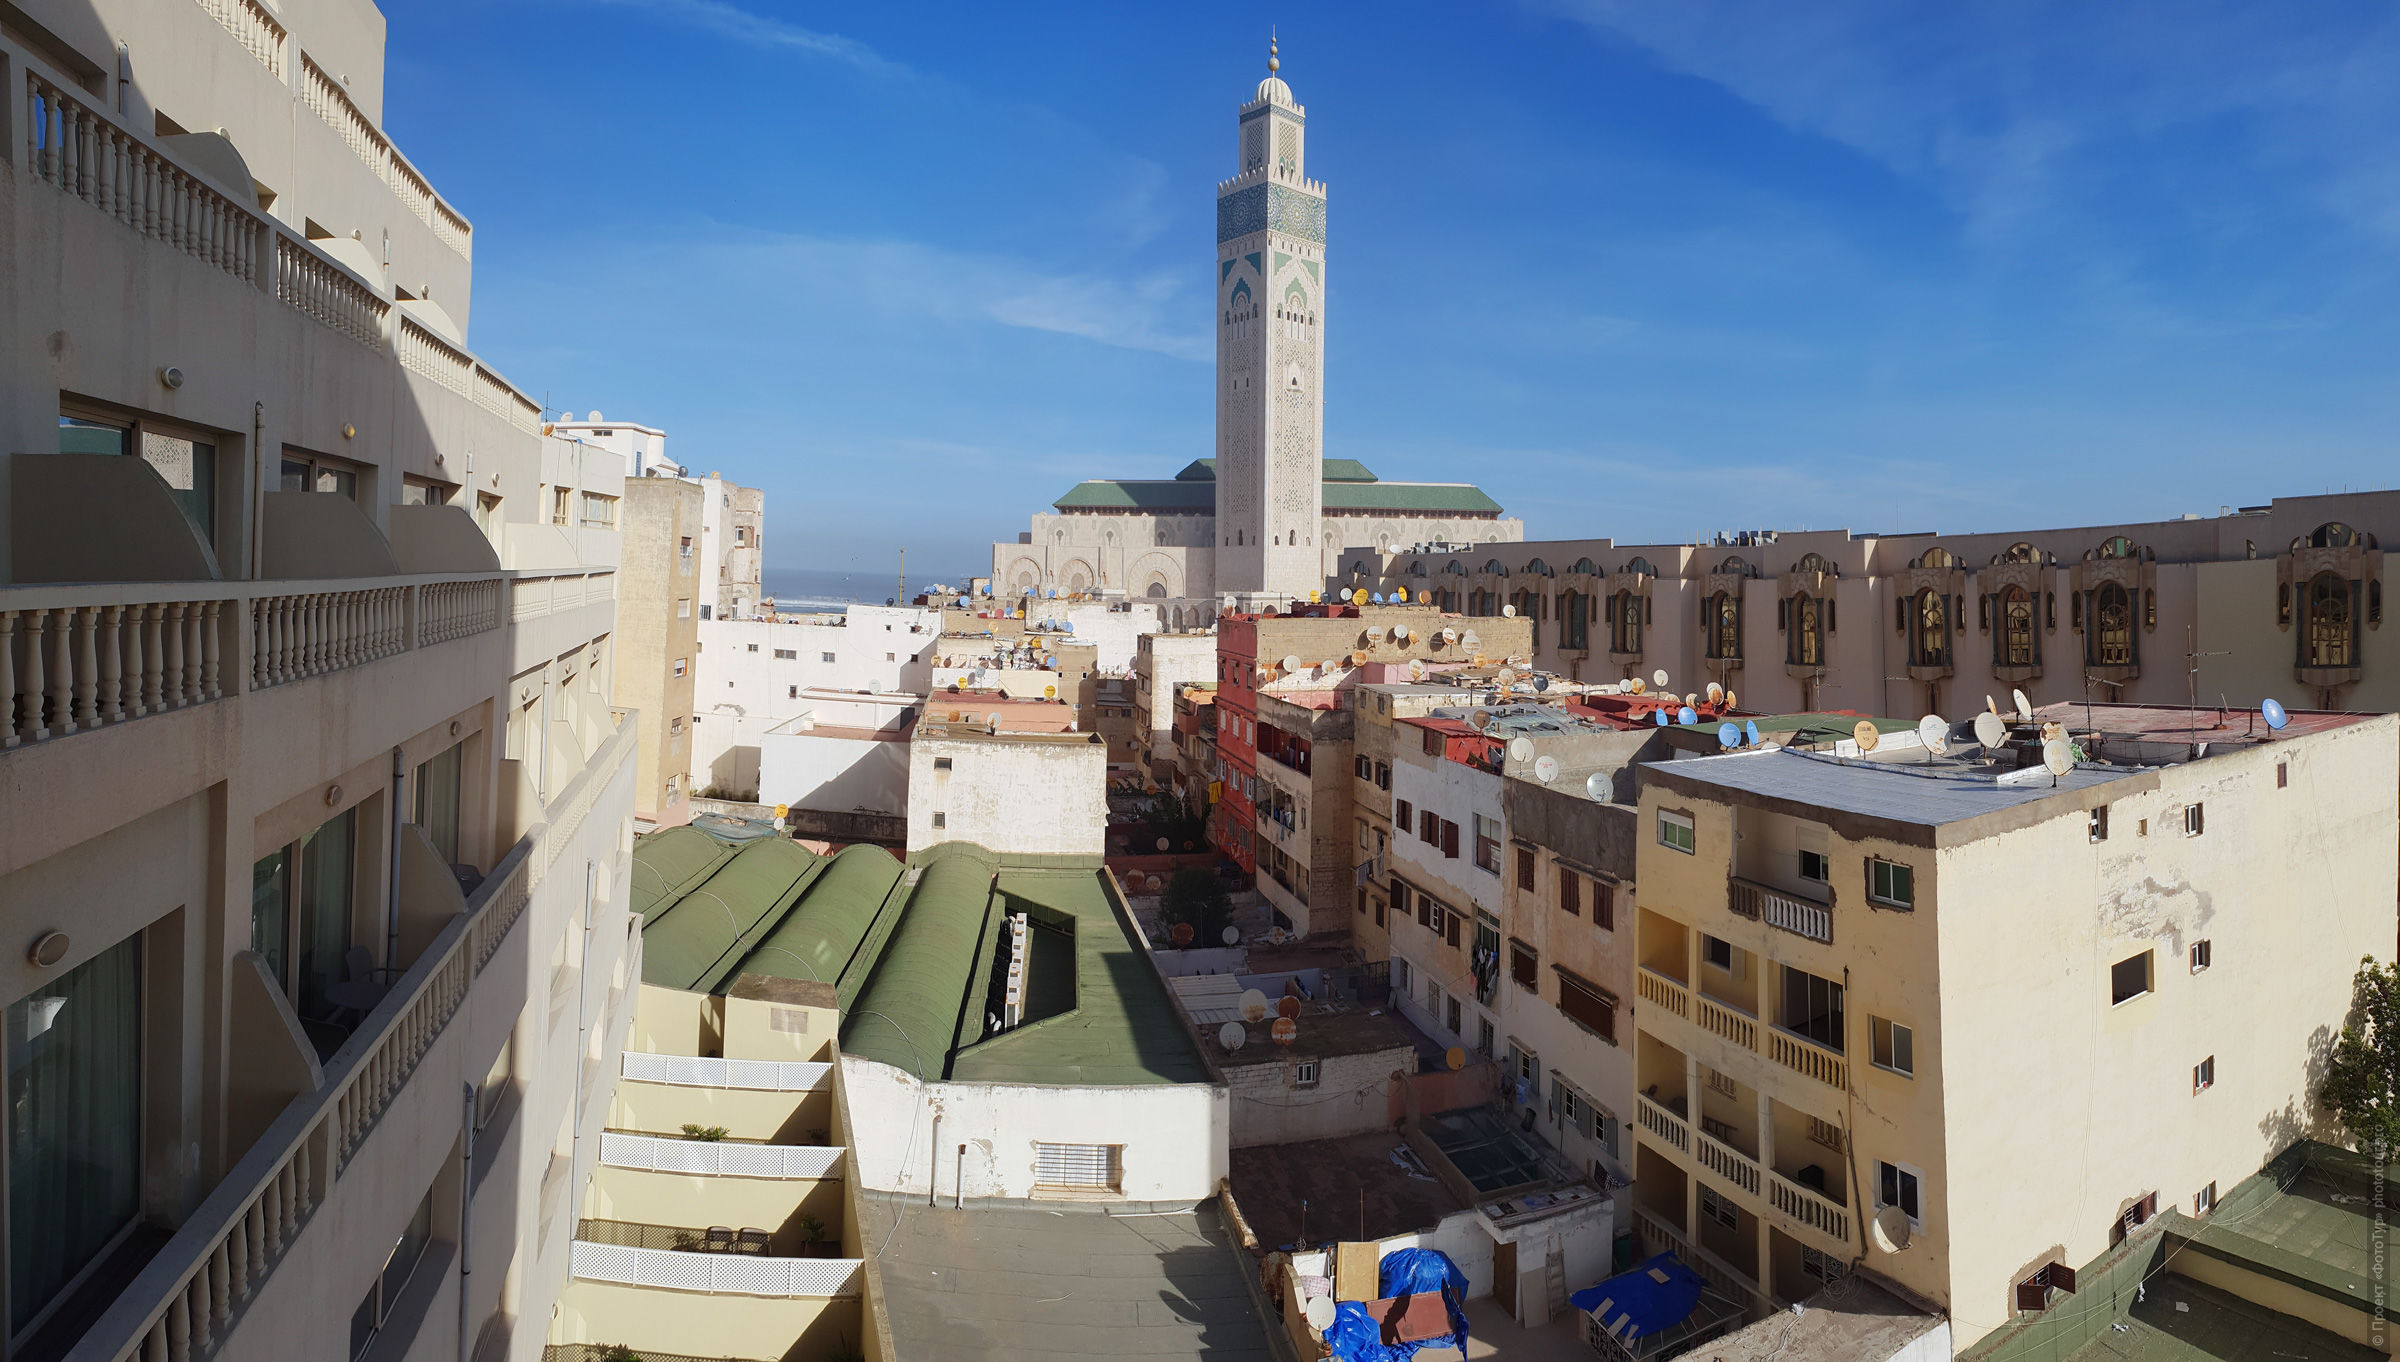 Мечеть Хасана II. Фототур в Марокко: медины и порты Марокко, 7 ноября - 18 ноября 2021 года.